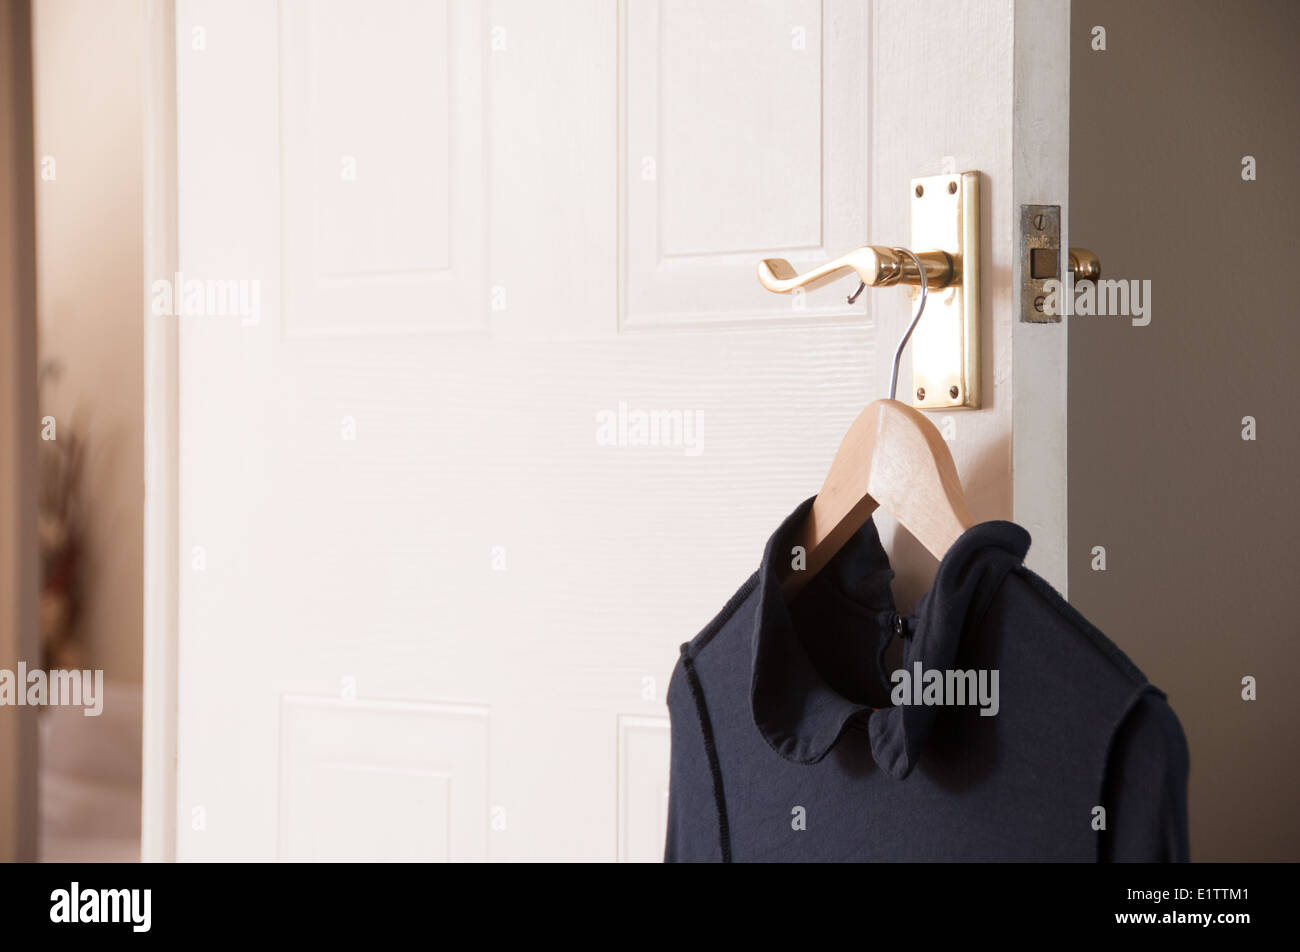 Dress hanging on bedroom door handle Stock Photo